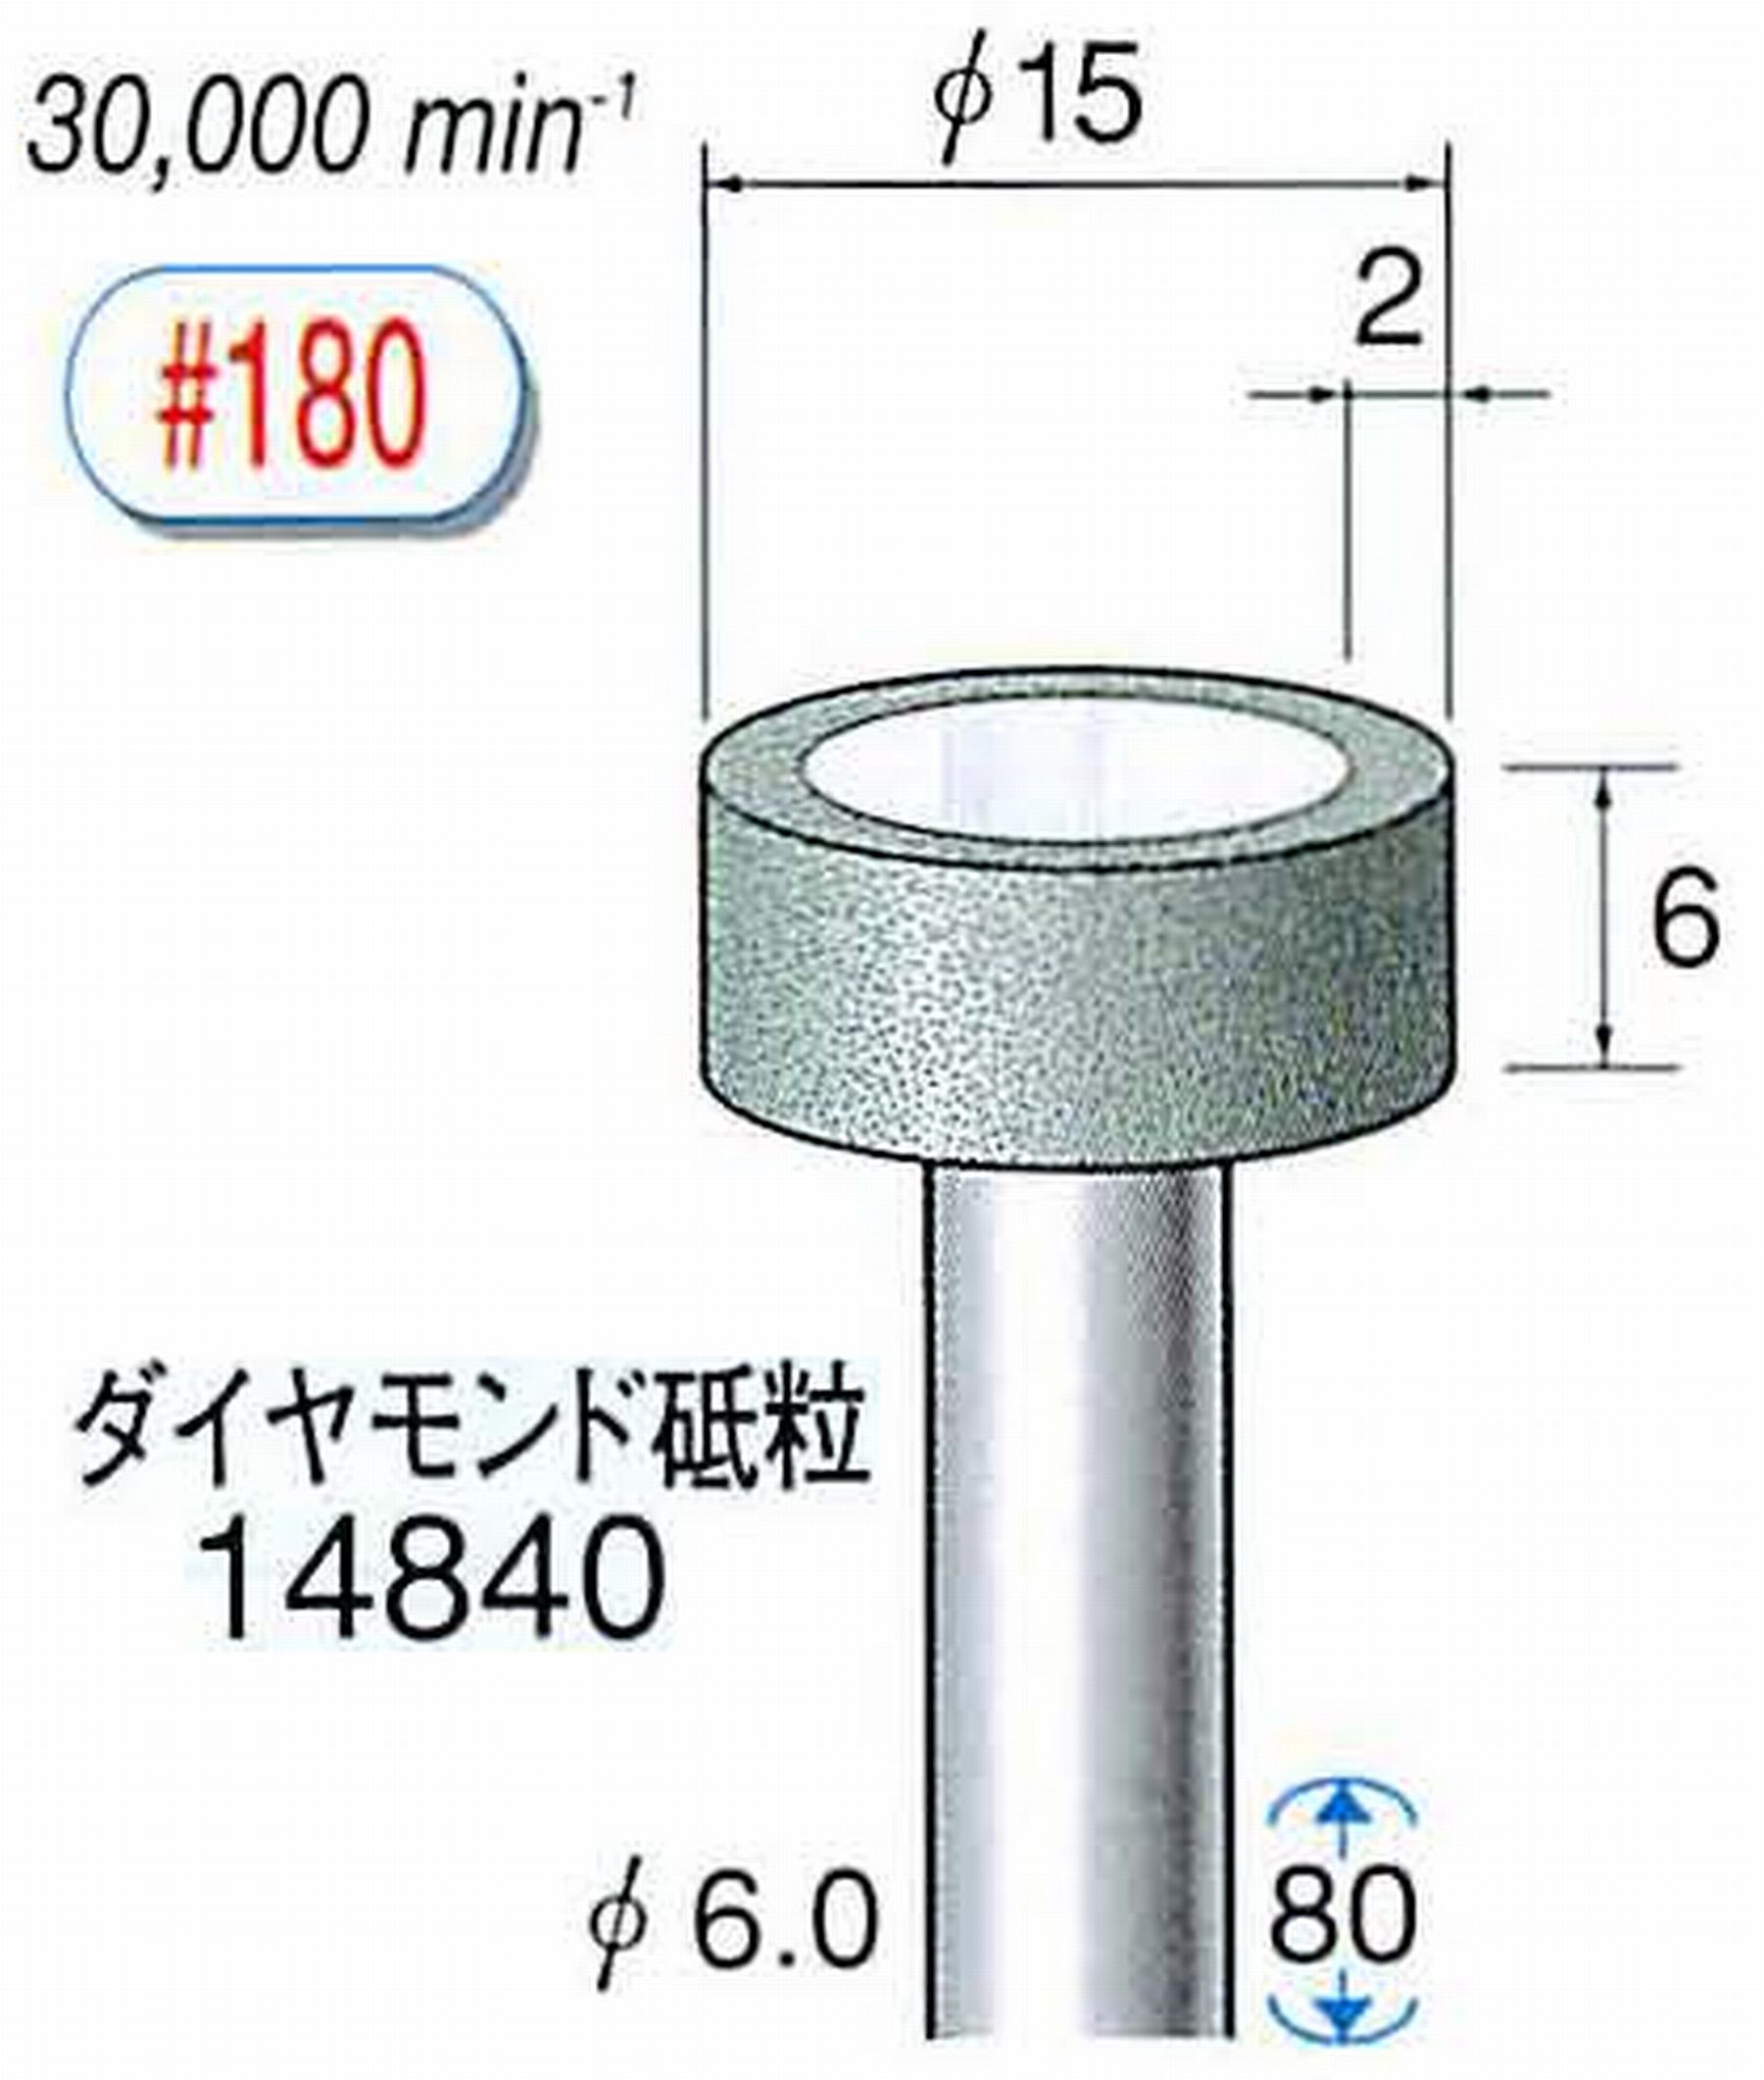 ナカニシ/NAKANISHI ビトリファイドダイヤモンド砥石 ダイヤモンド砥粒 軸径(シャンク)φ6.0mm 14840